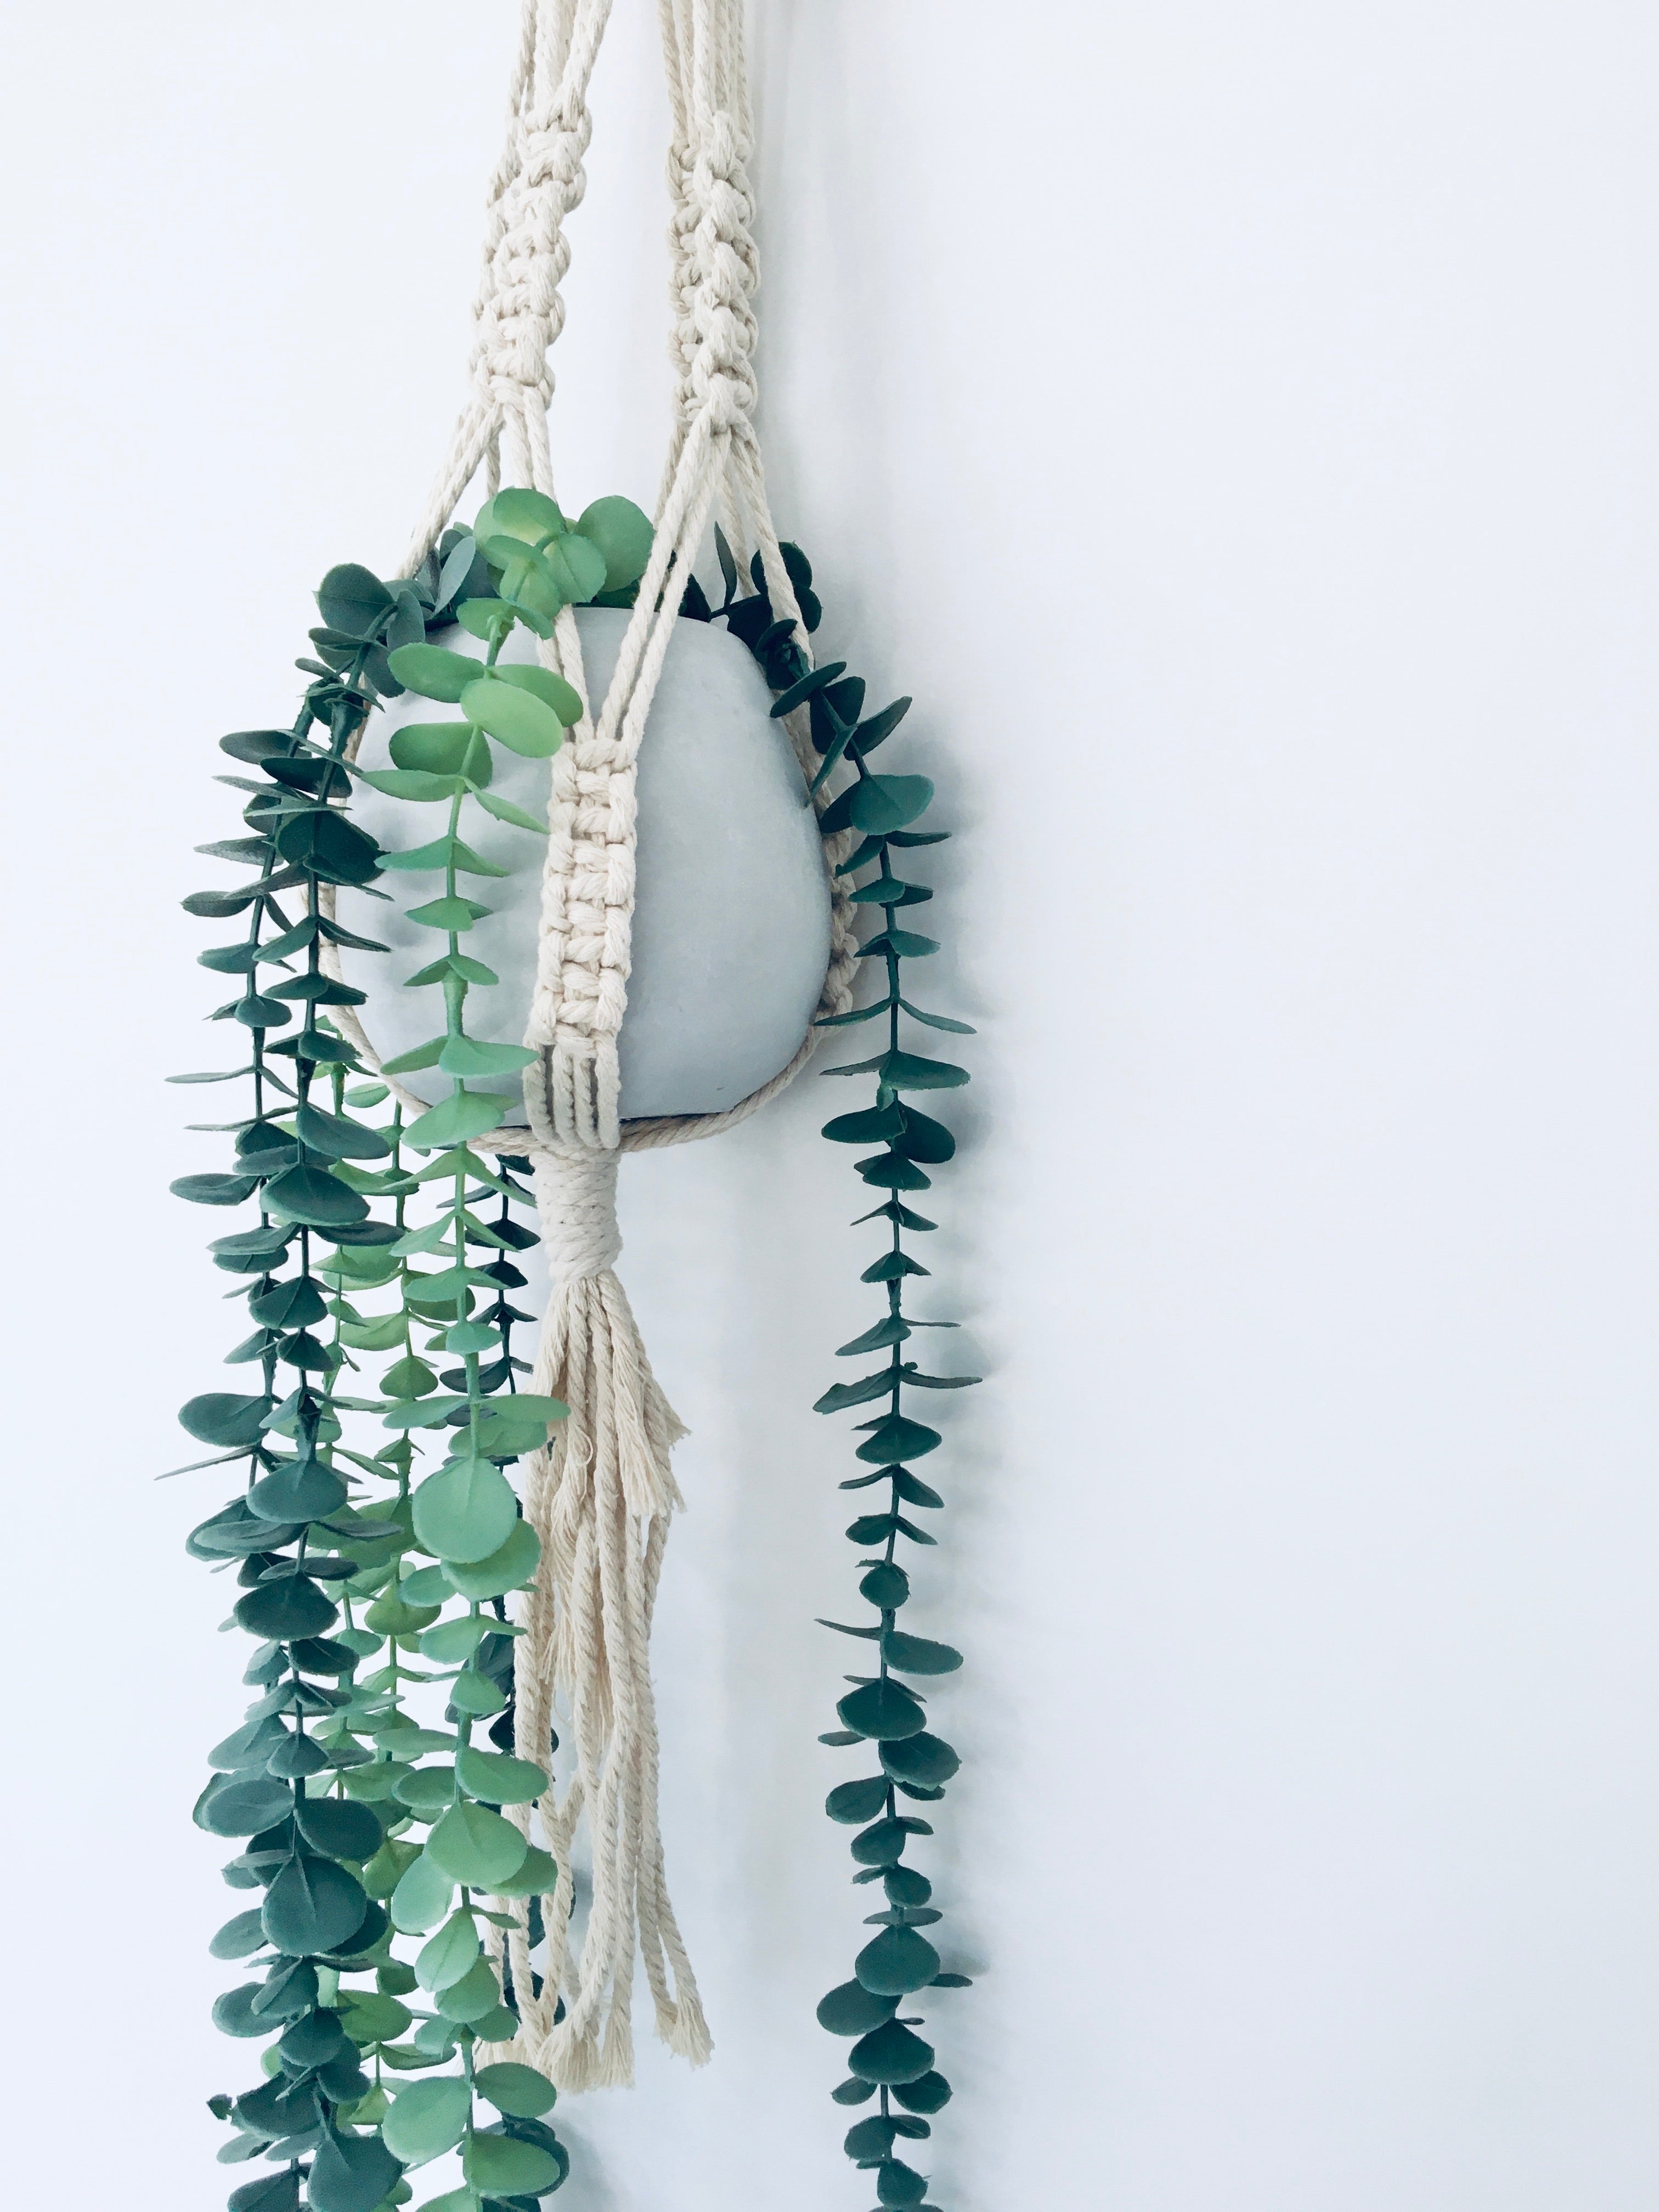 Plant Hanger - Light Timber